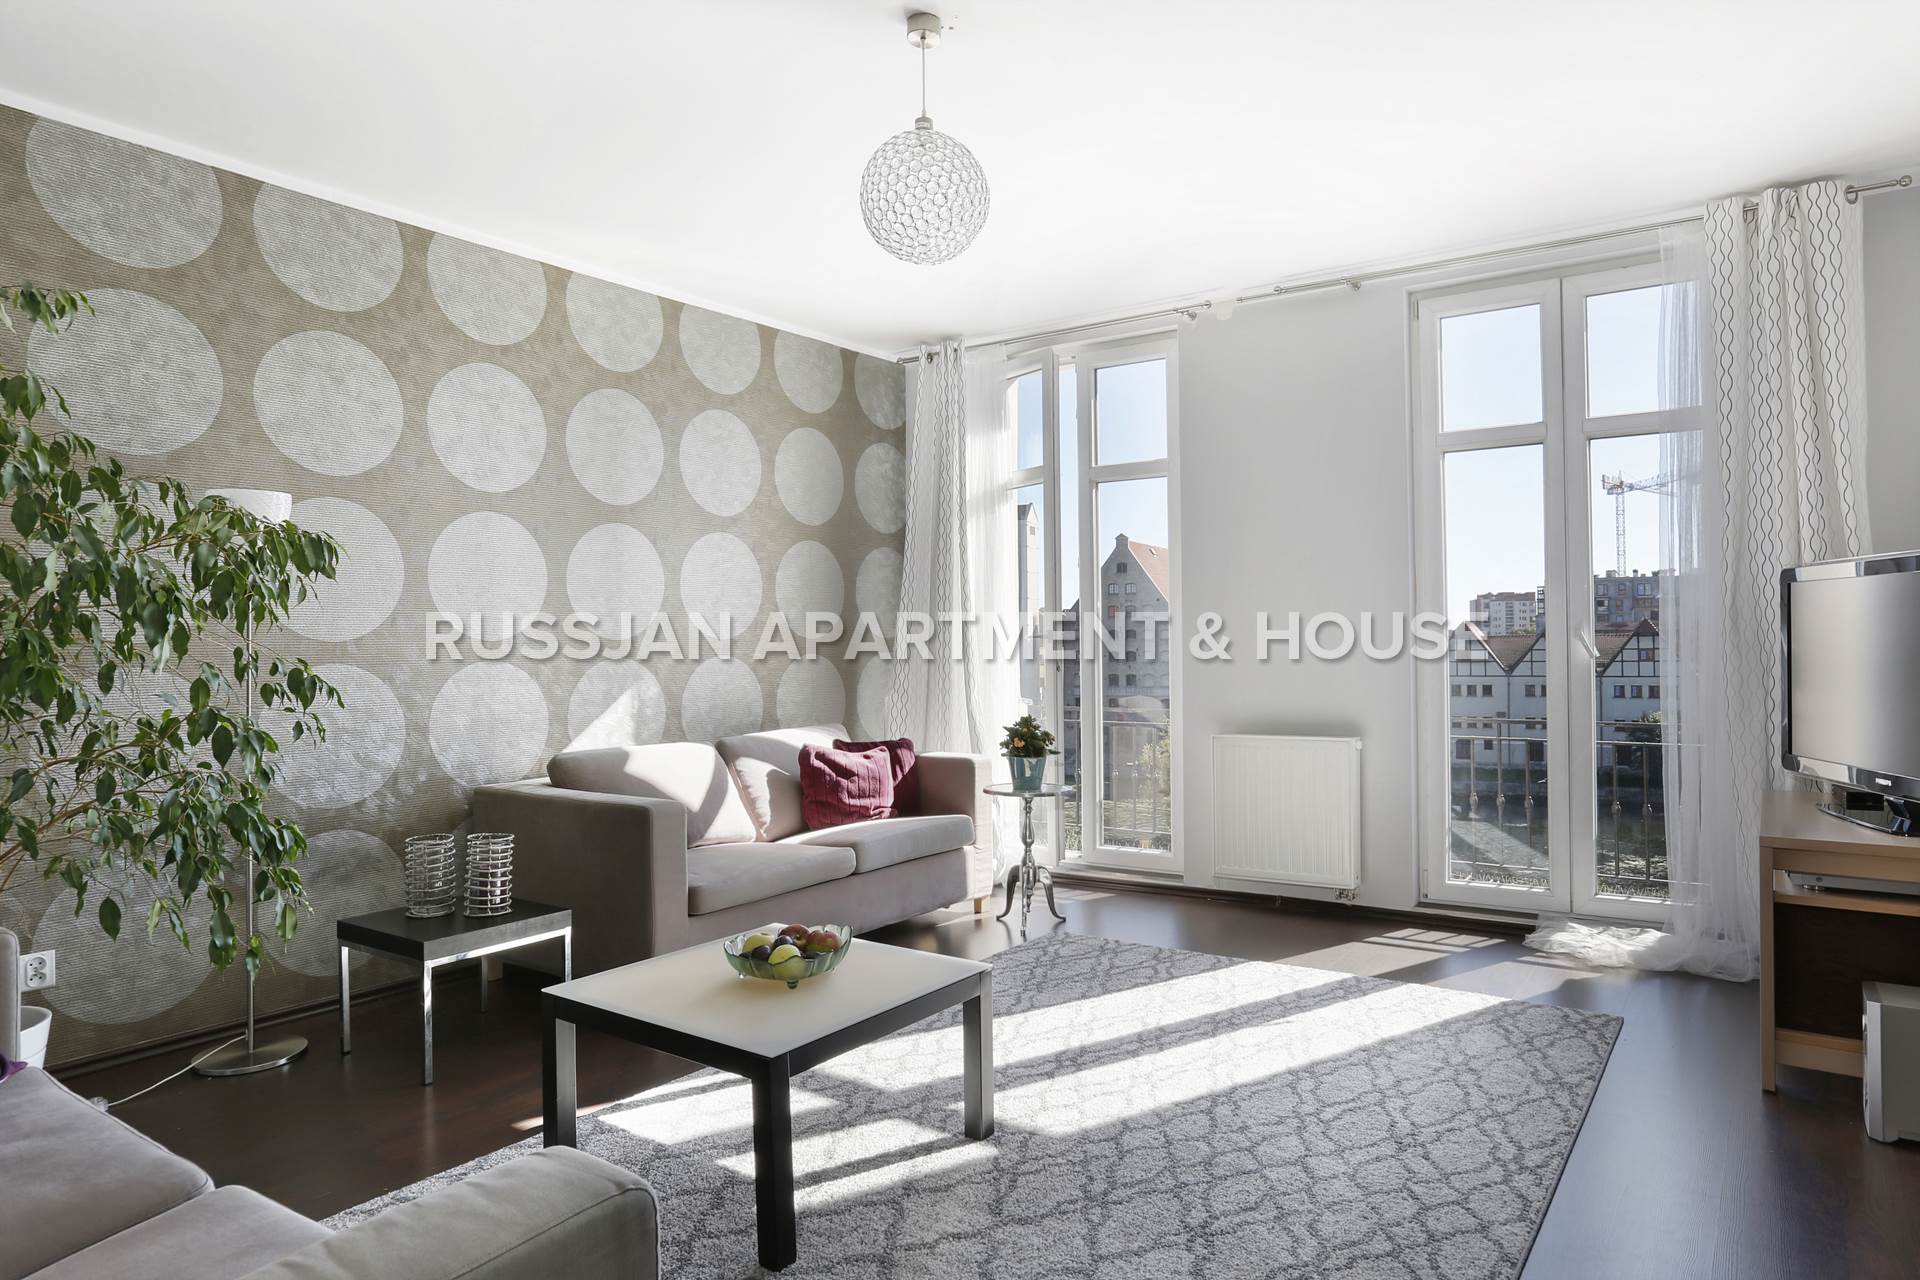  Ulica Kotwiczników | RUSSJAN Apartment & House